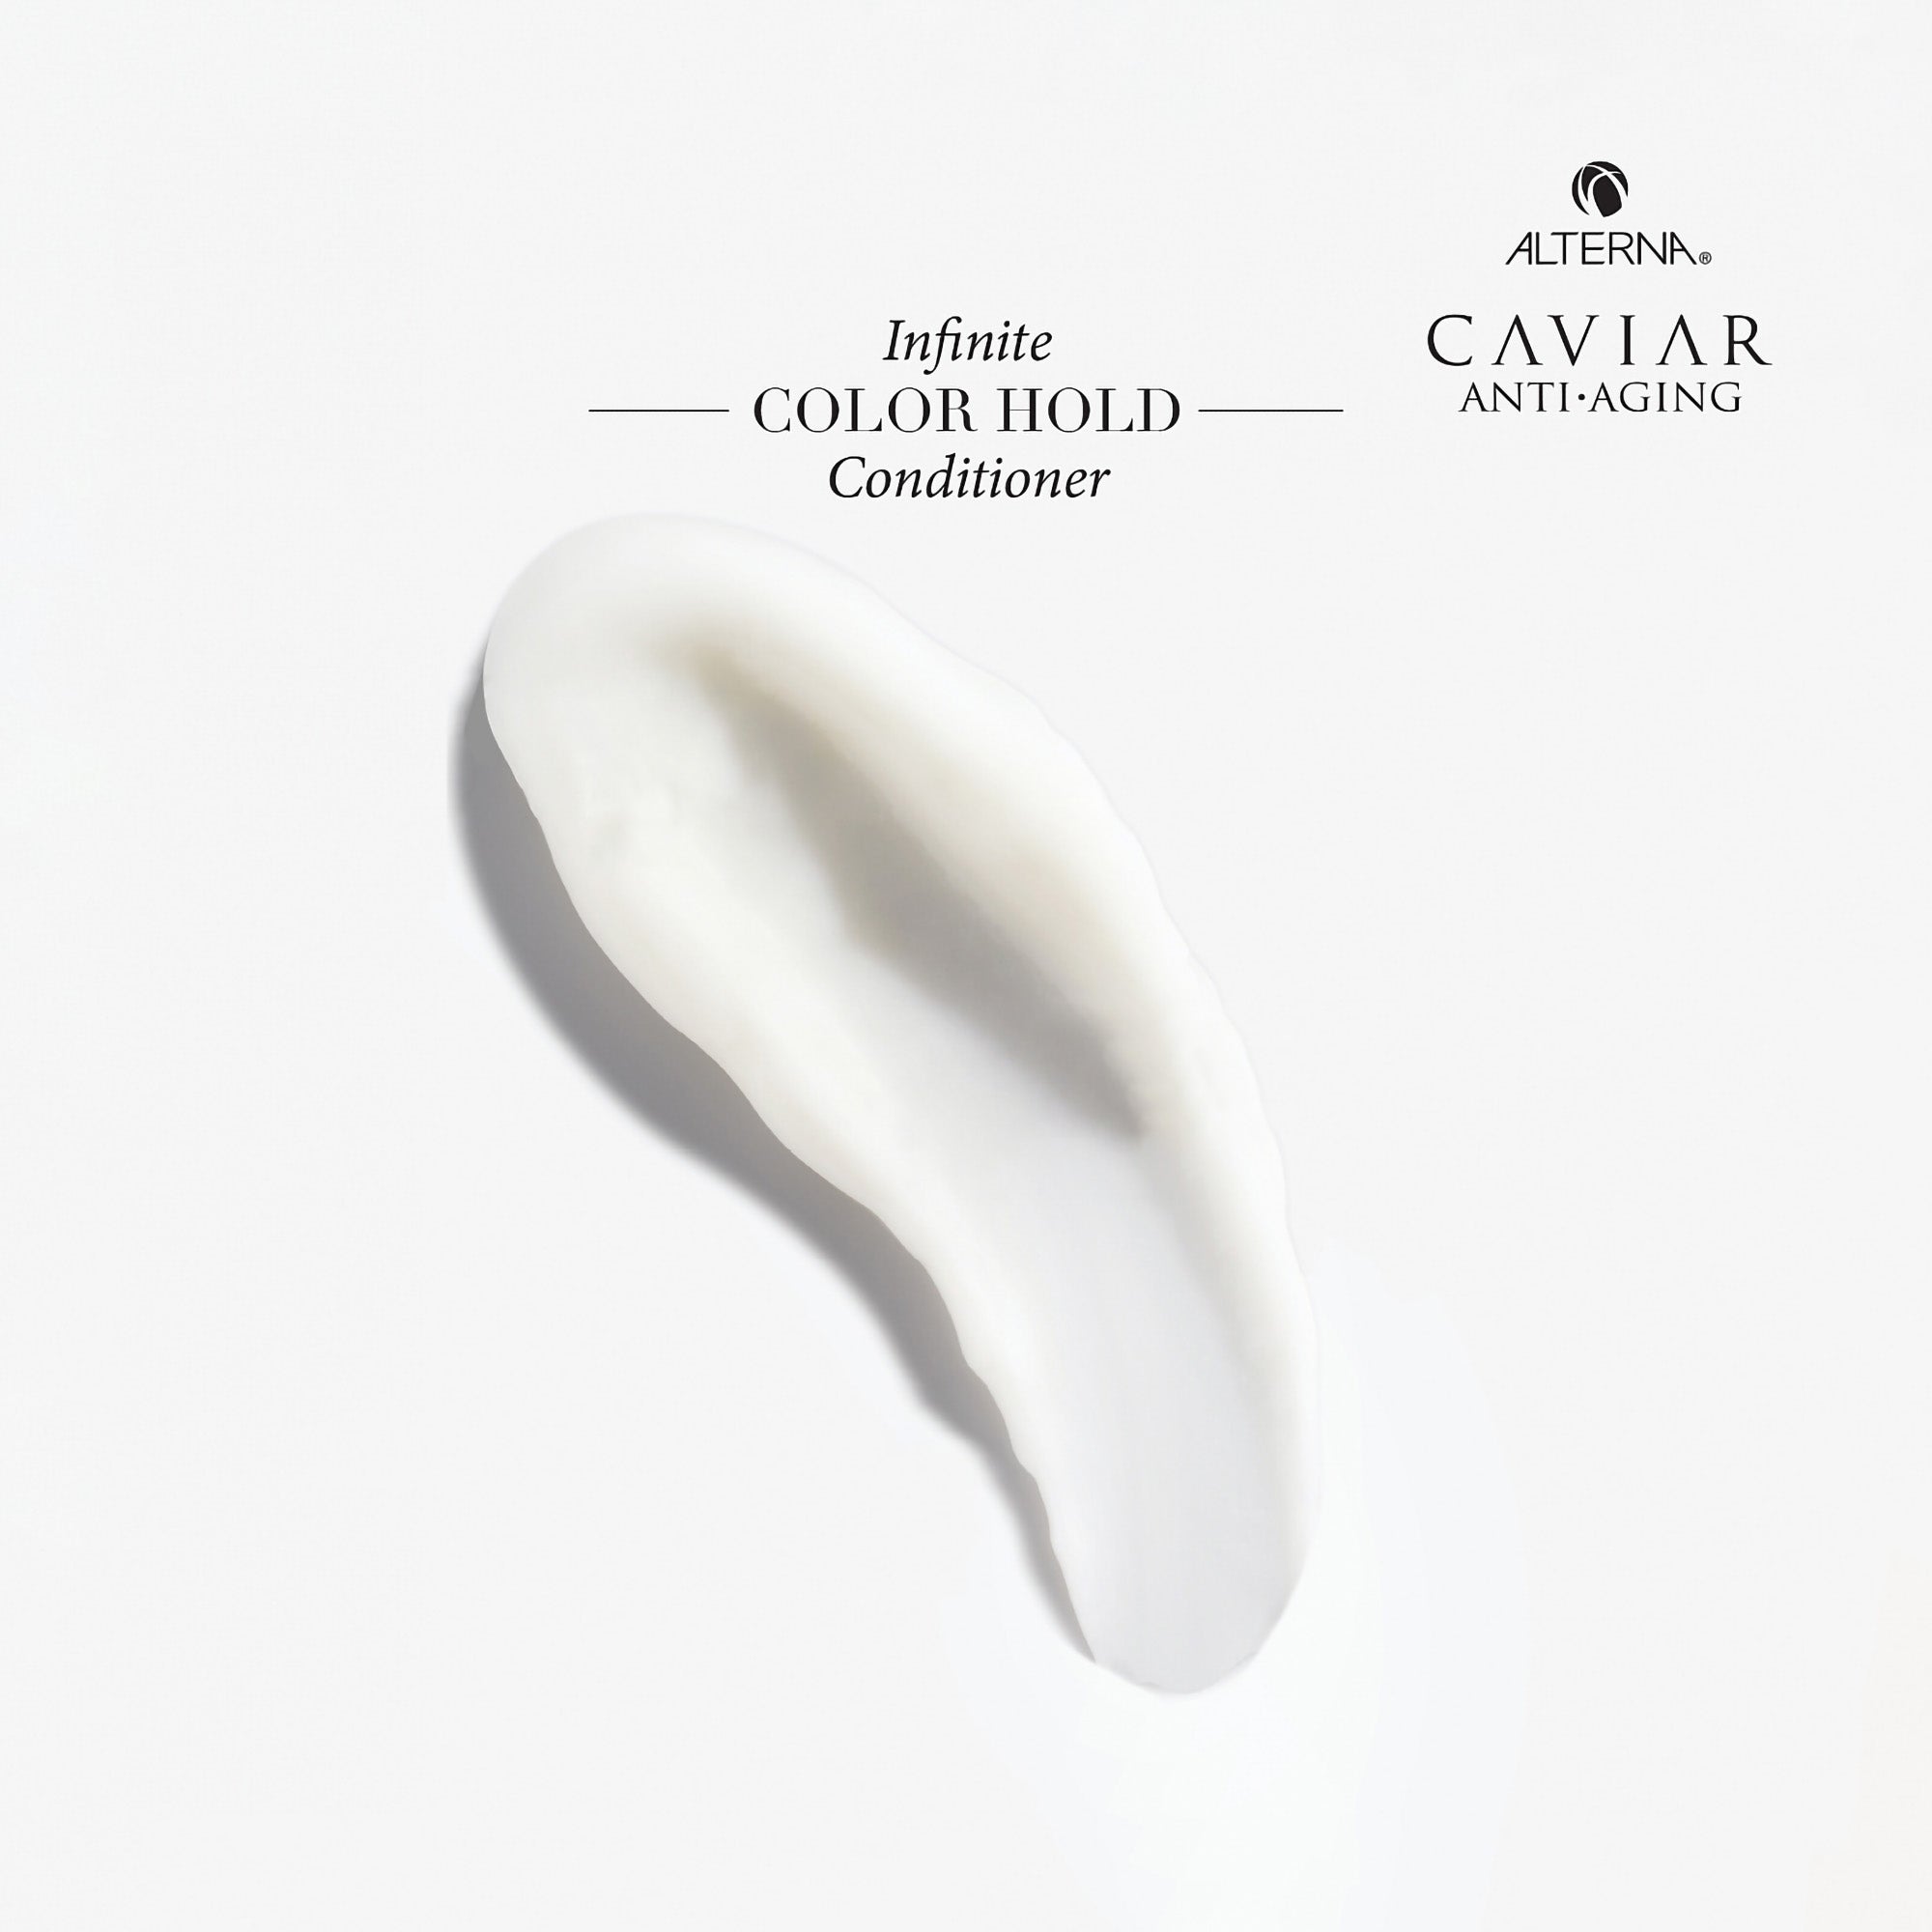 Alterna Caviar Anti-Aging Infinite Color Hold Conditioner / 33.8OZ